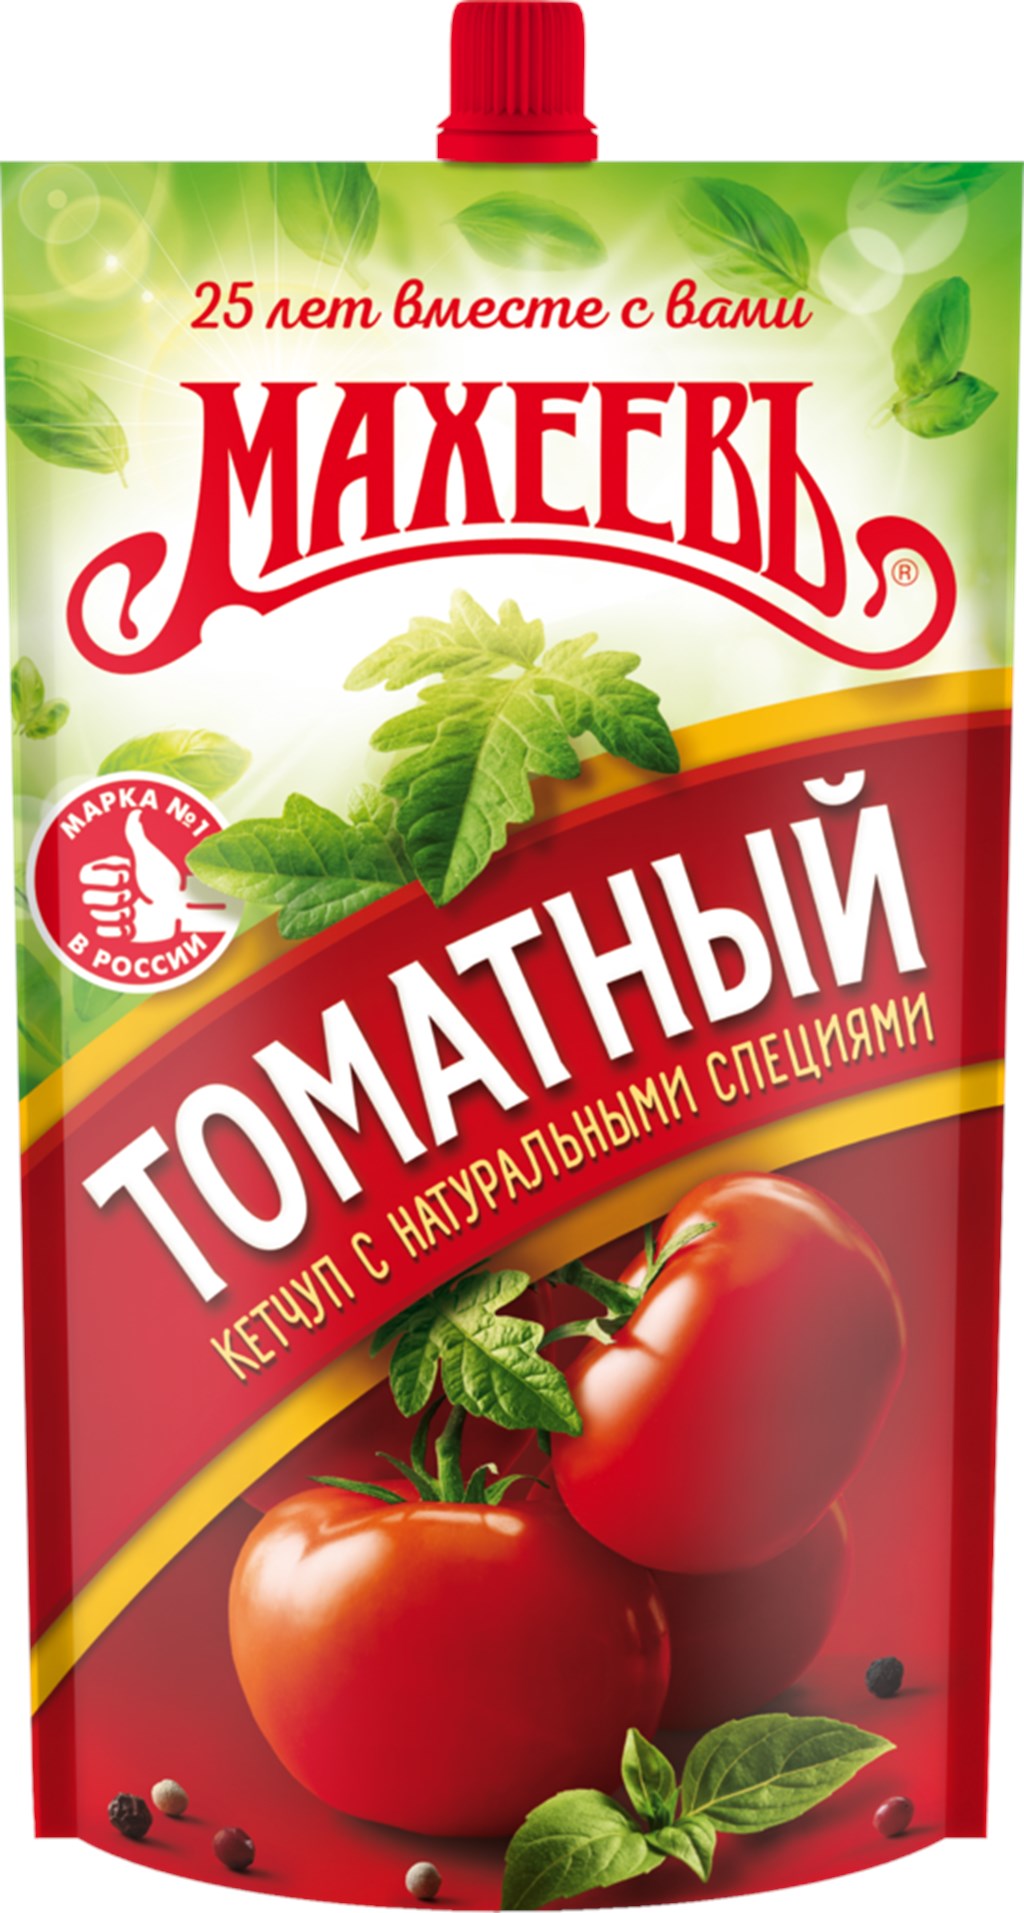 Кетчуп Классический томатный 300 г